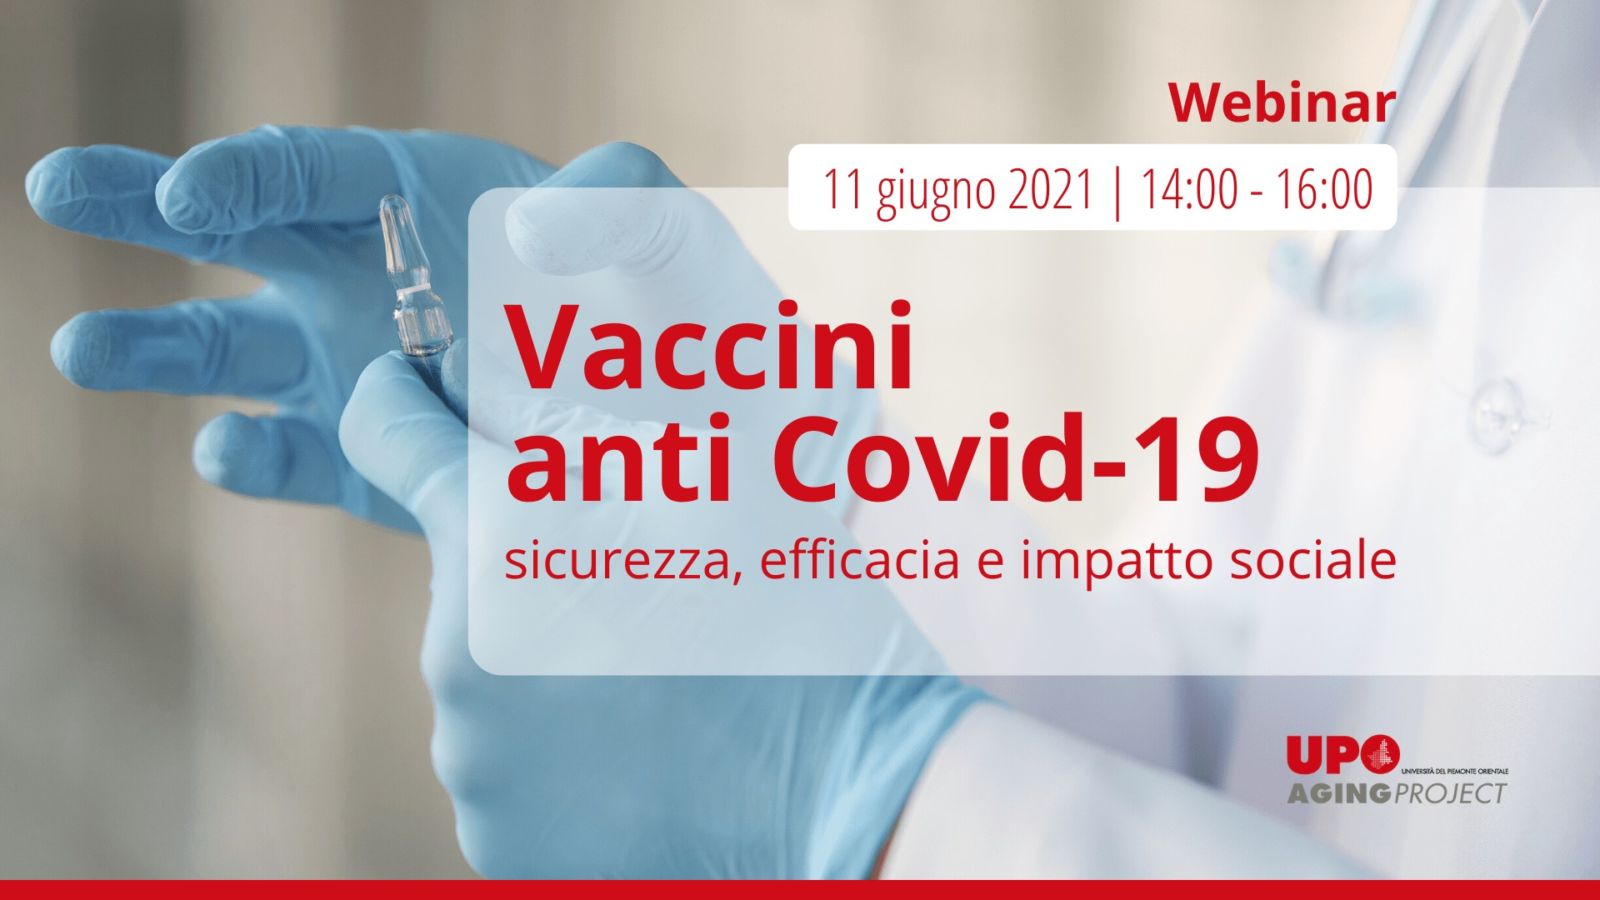 vaccini covid webinar - Aging Project UniUPO